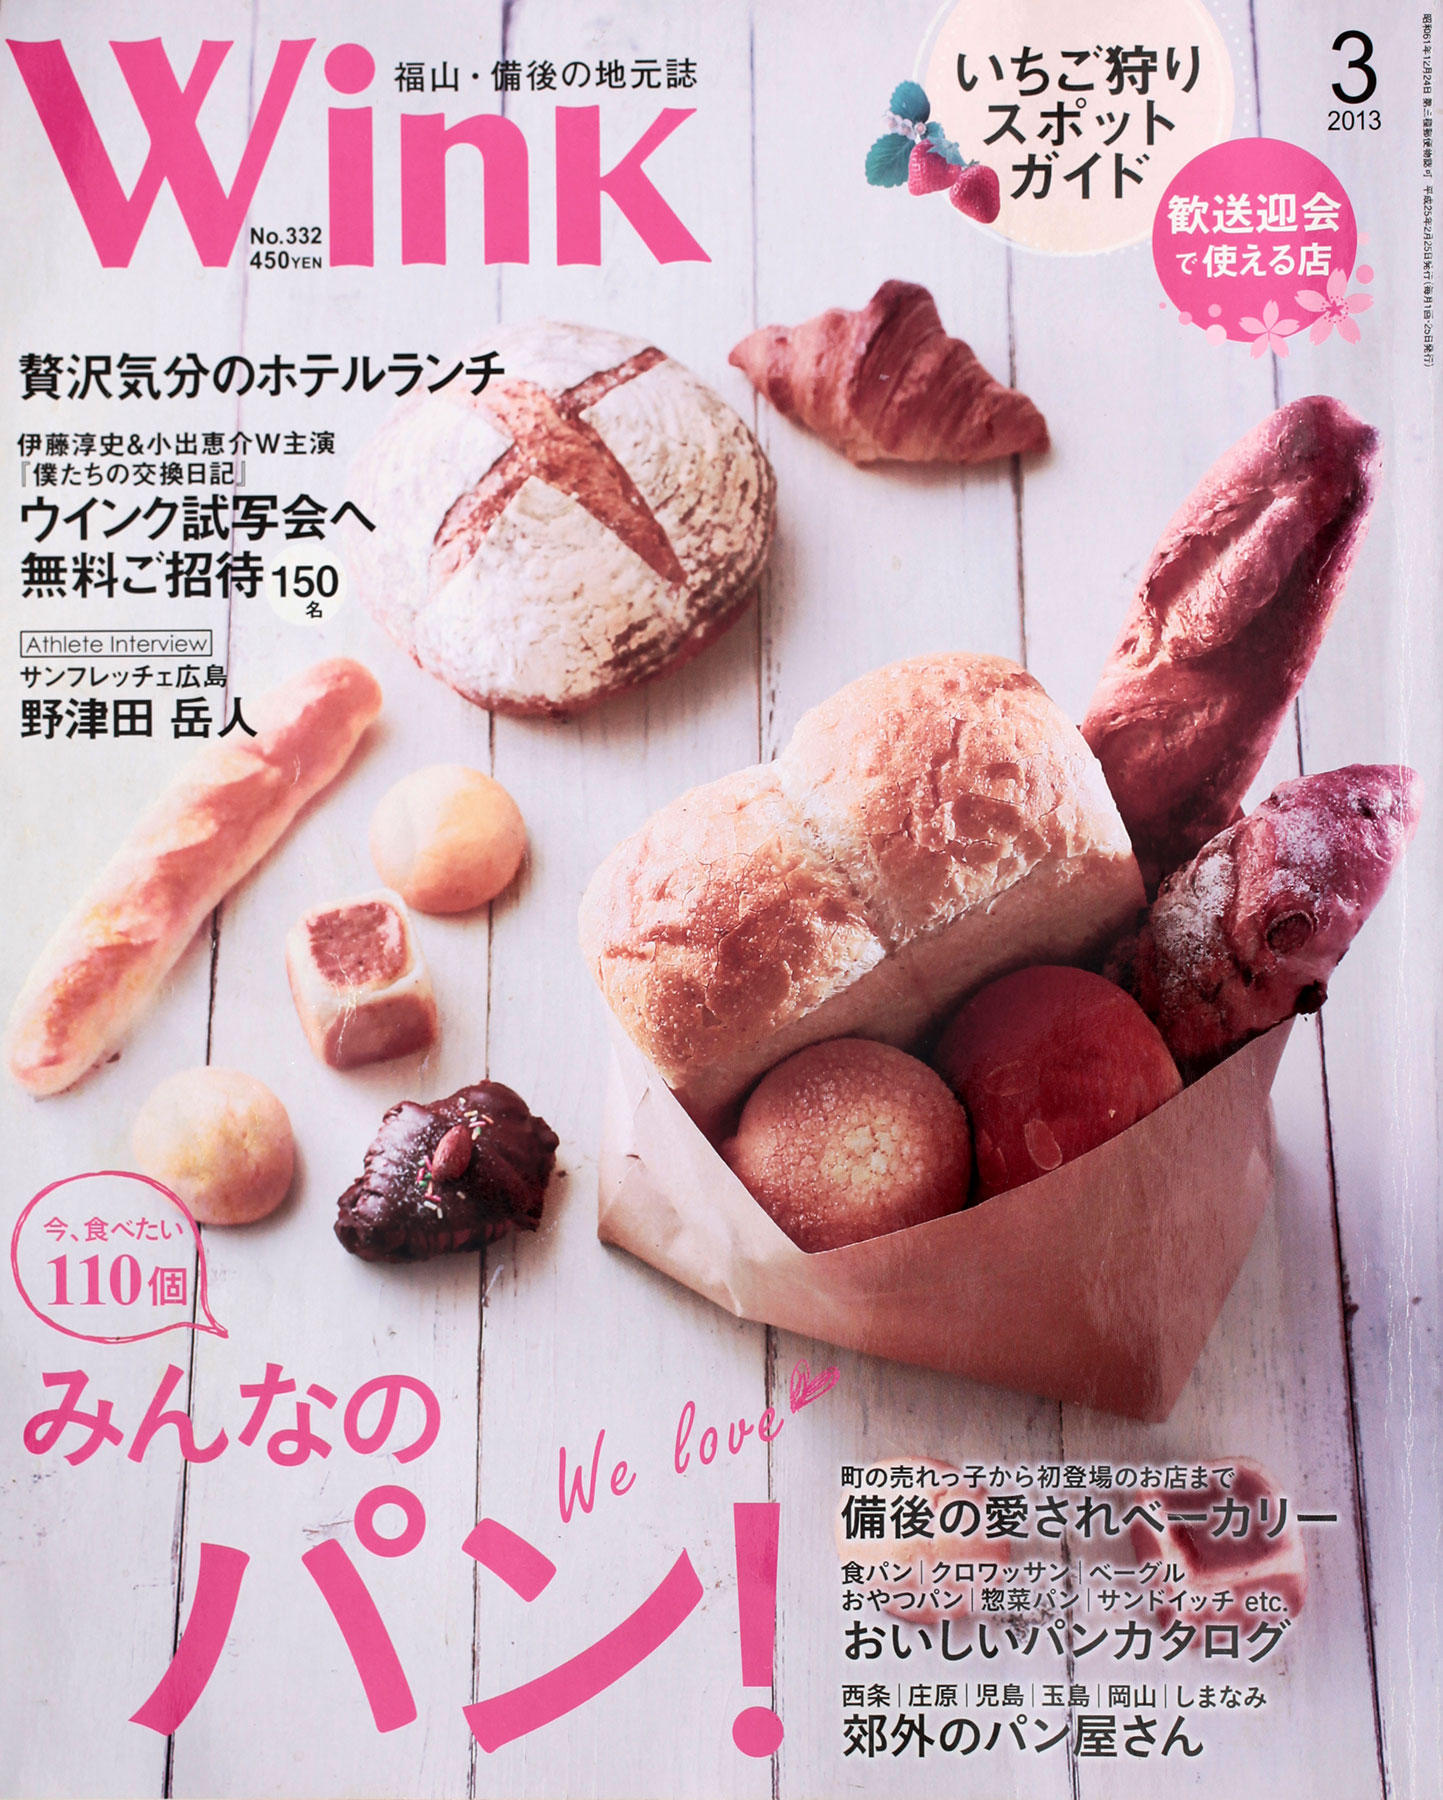 ル・サンク自家製天然酵母パン【Le☆Cinq】Wink福山・備後 2013年3月号